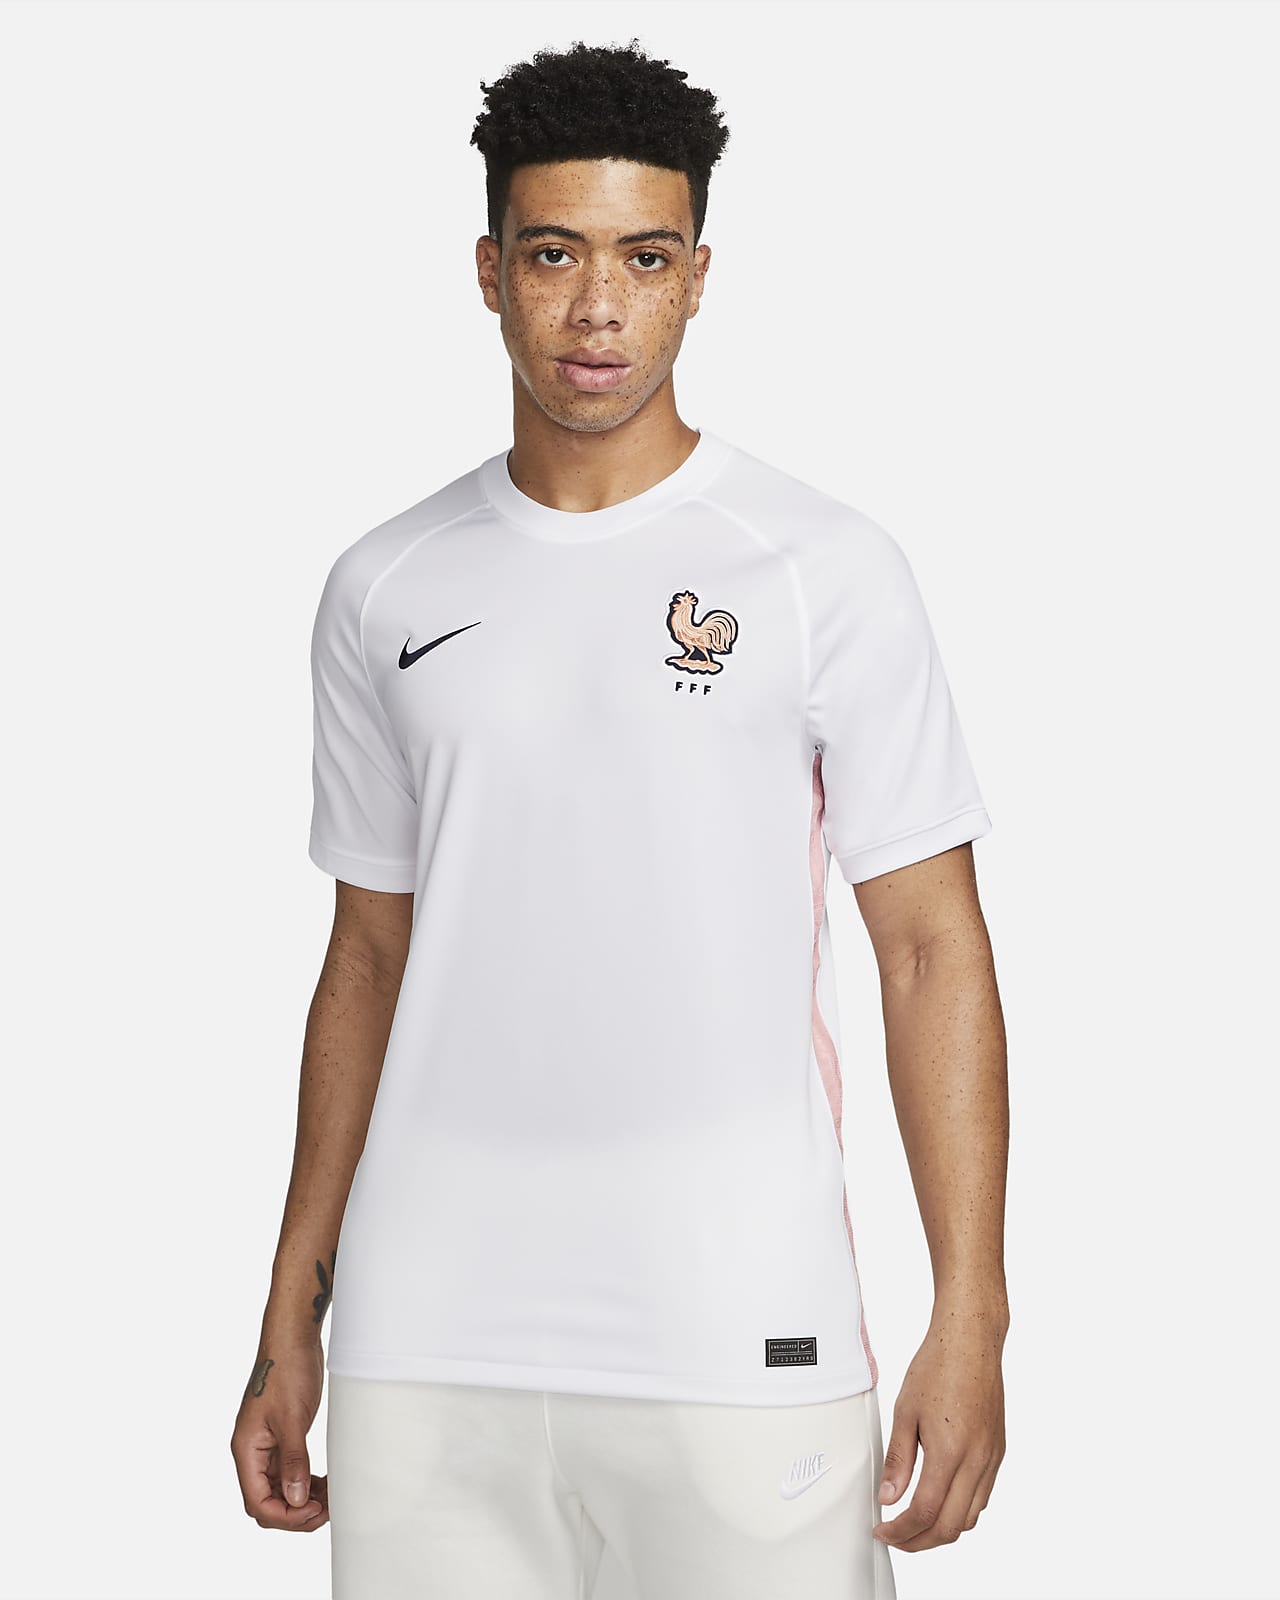 FFF 2022 Stadium Away Men's Nike Dri-FIT Football Shirt